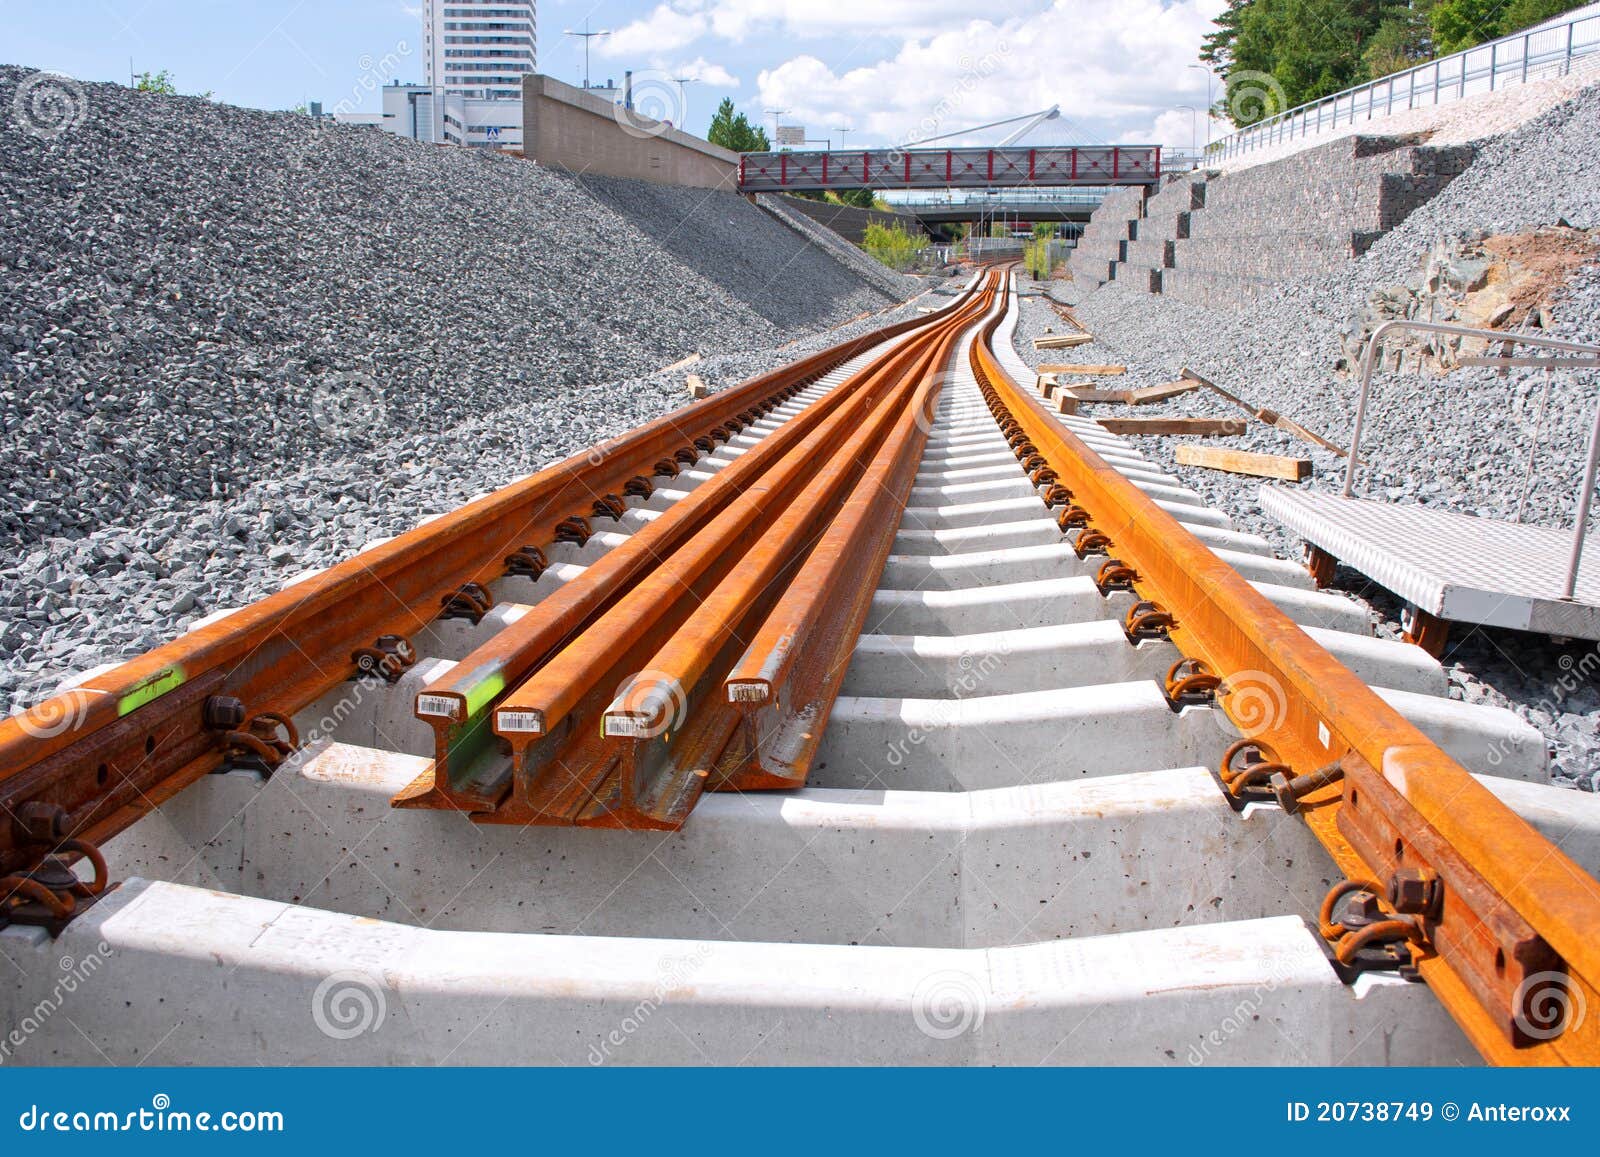 metro railway construction site